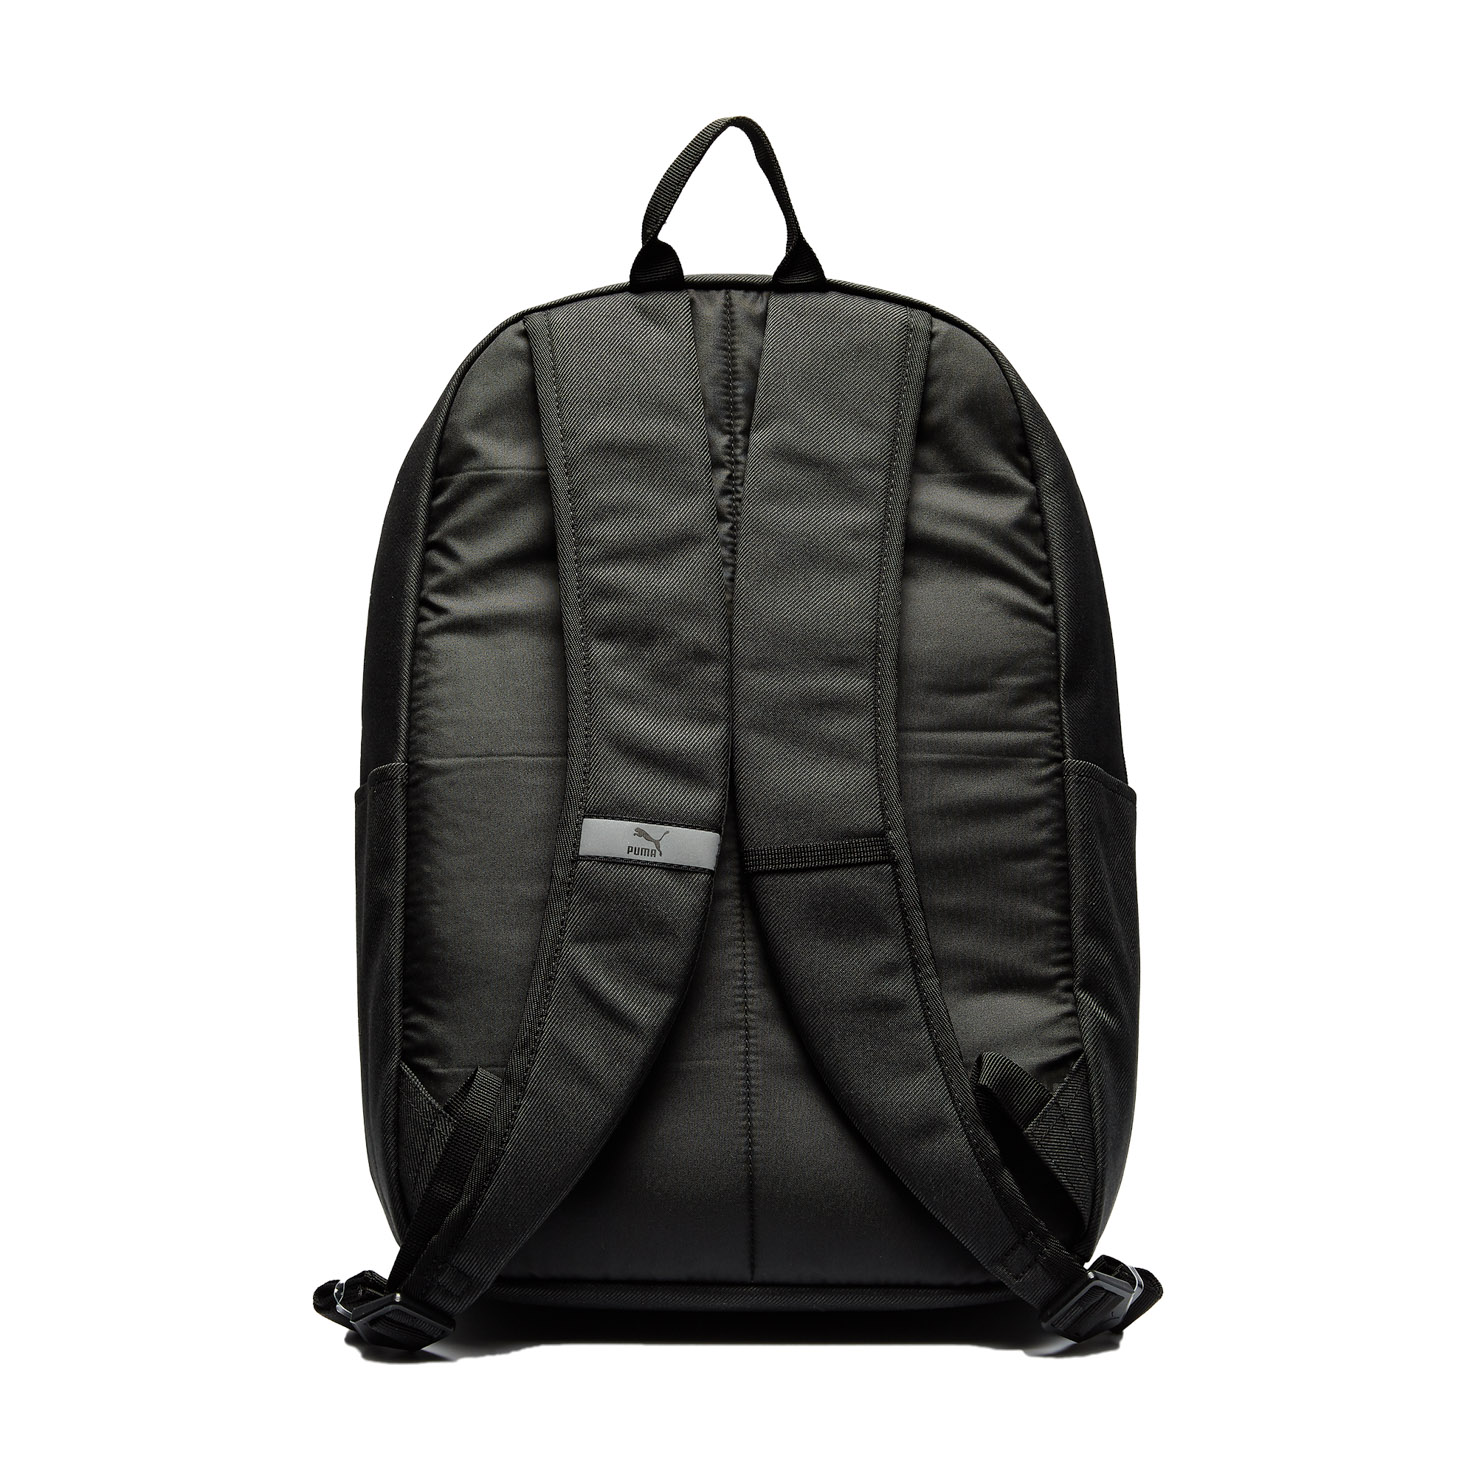 PUMA x PEANUTS Backpack PUMA, размер Один размер, цвет серый PM078009 - фото 2